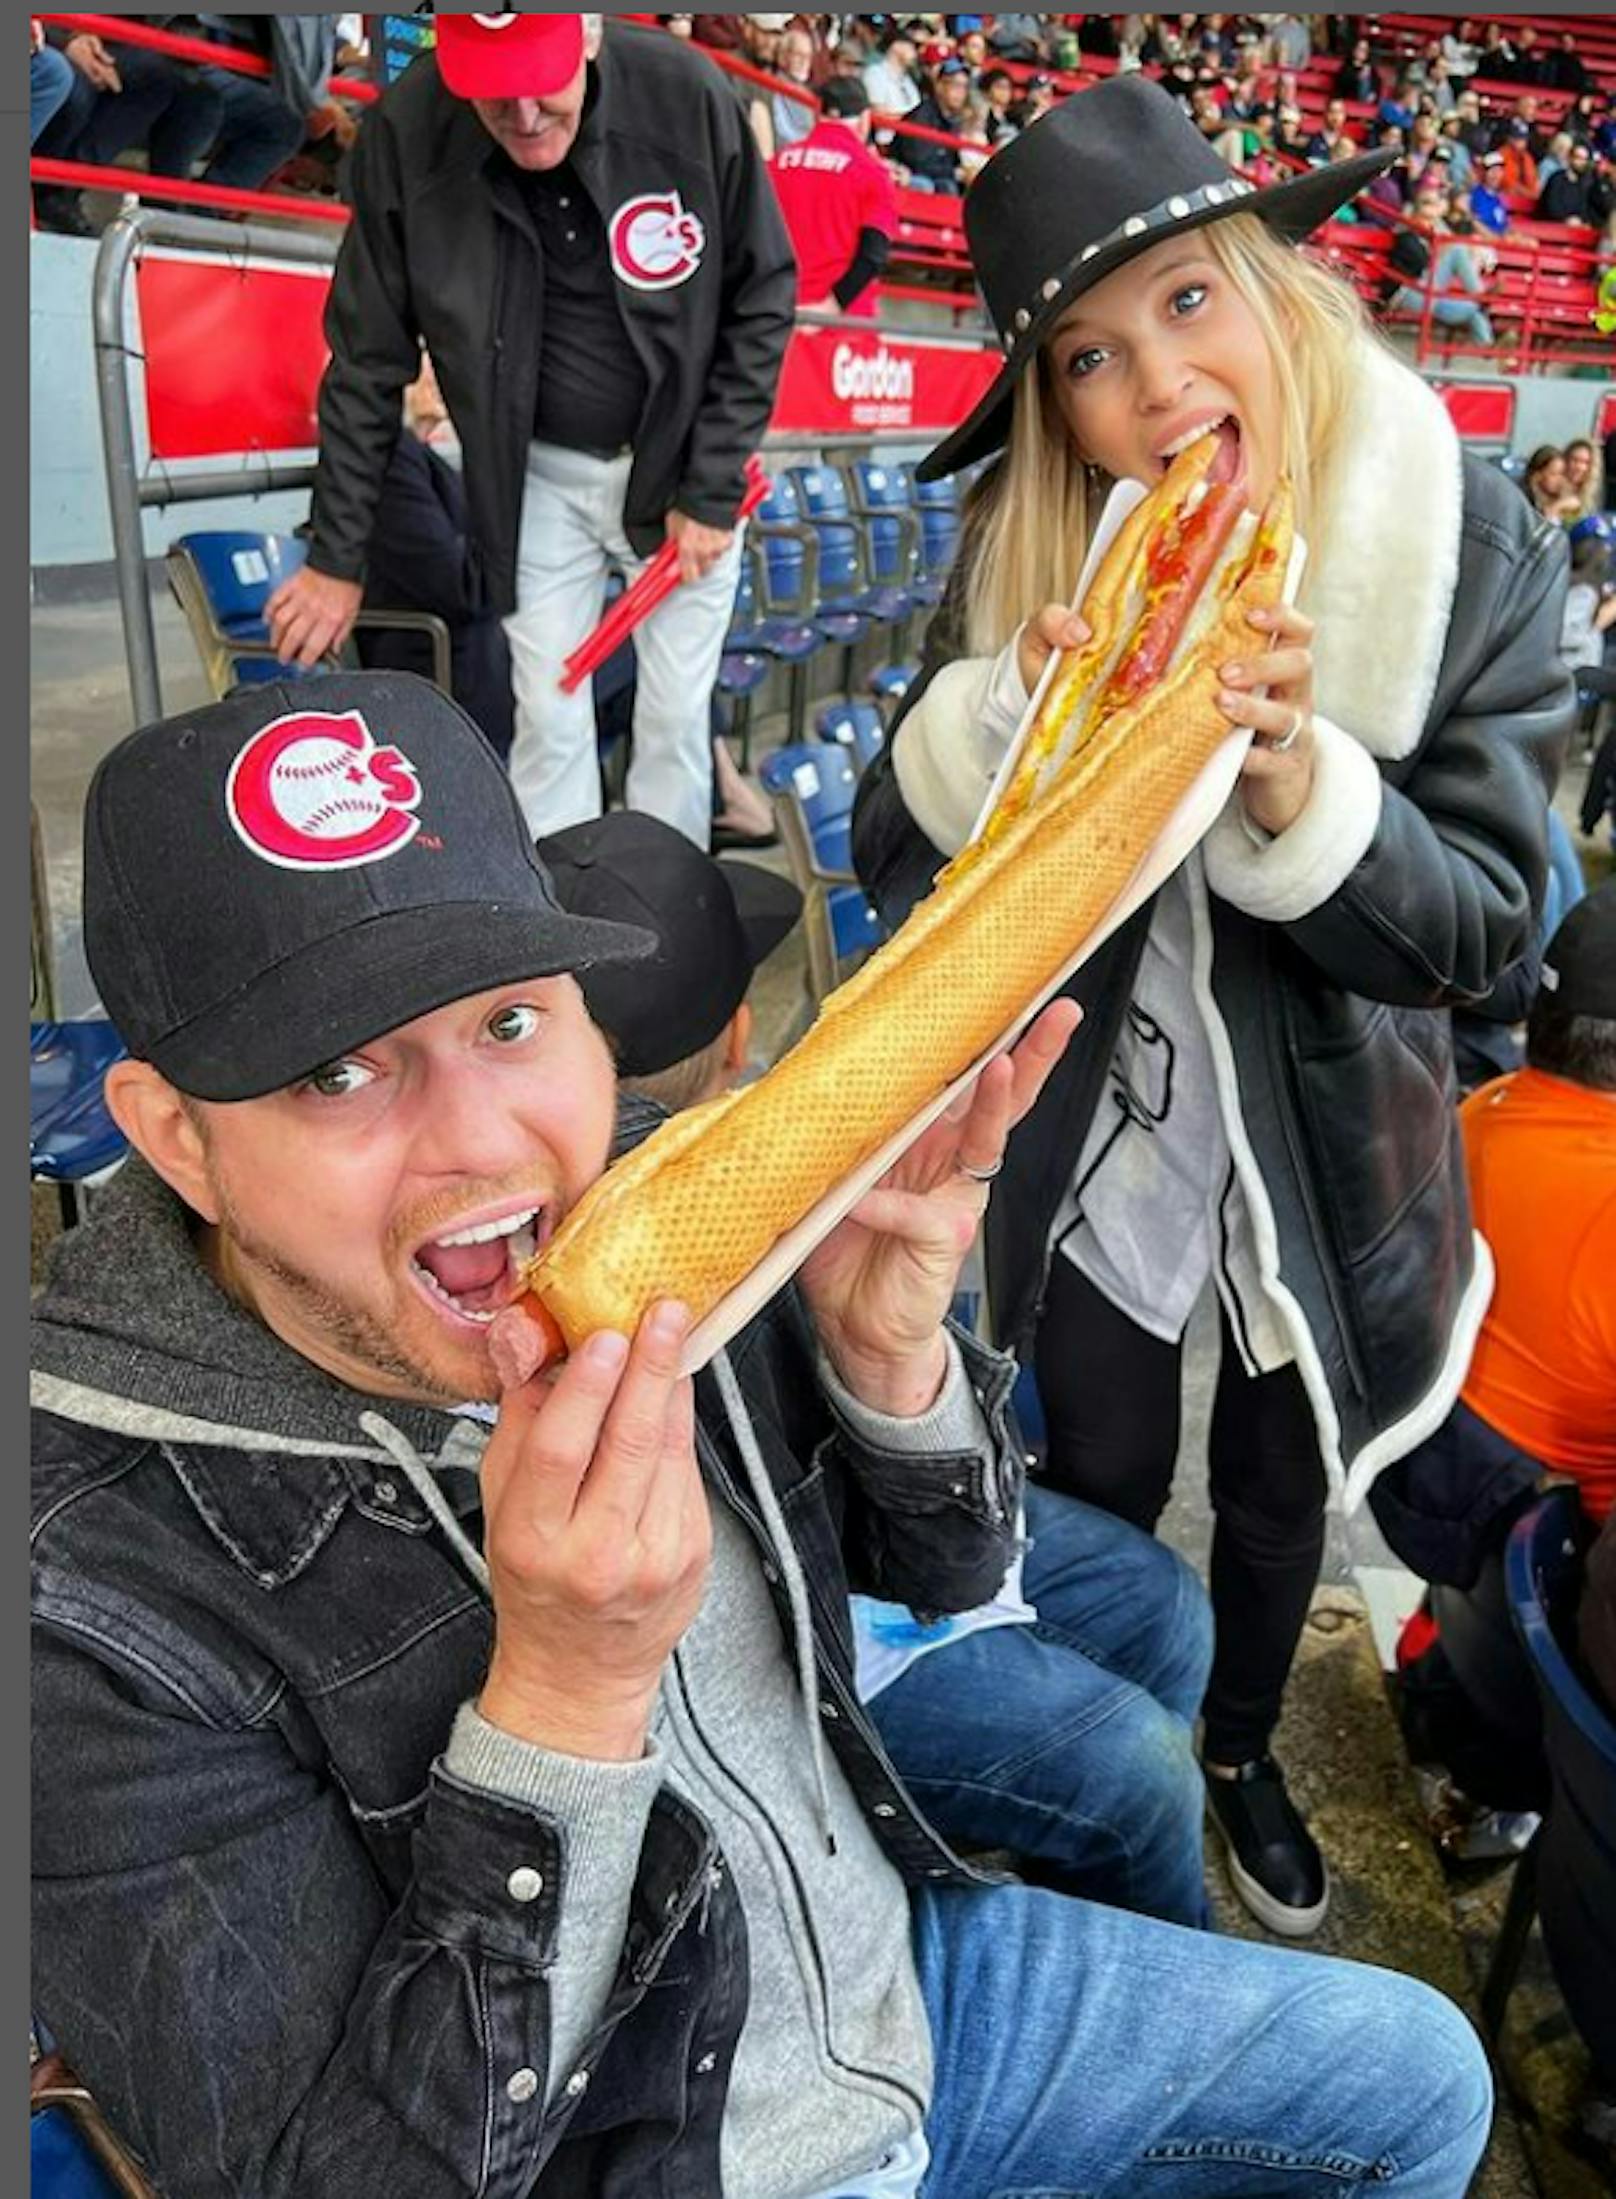 Sänger Michael Bublé teilt sich ein riesiges Hotdog mit seiner Frau Luisana Lopilato.